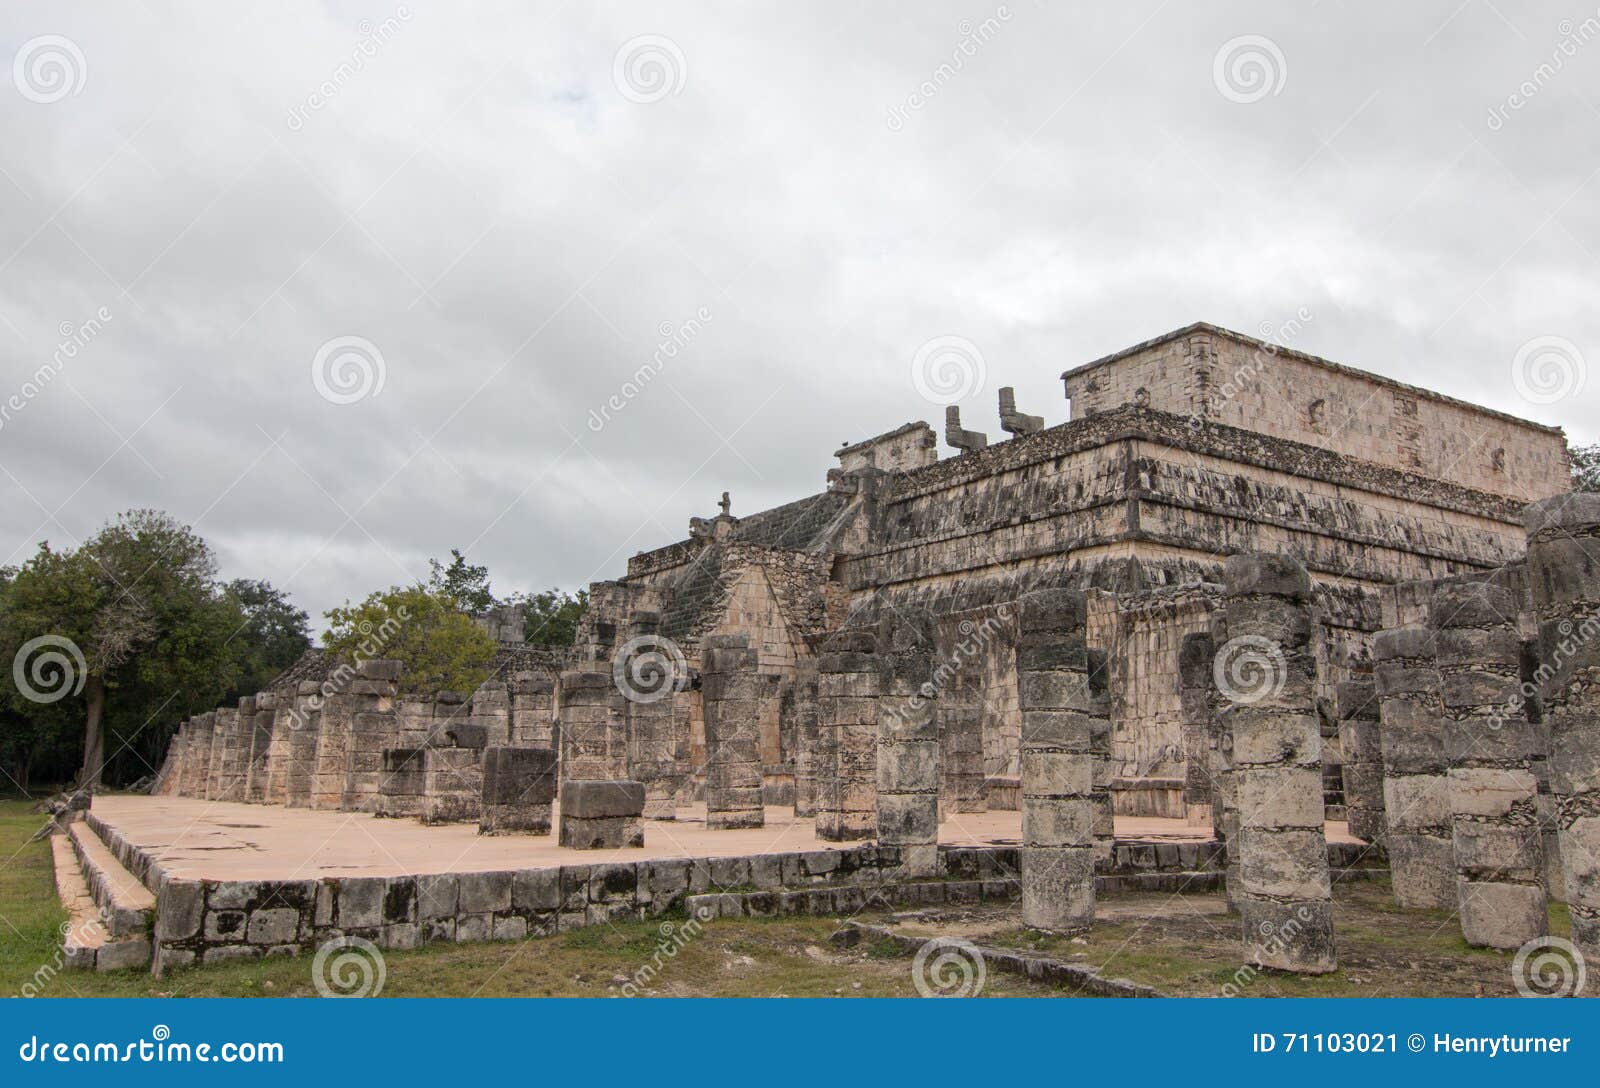 templo de los guerreros temple of the warriors at chichen itz mayan ruins on mexico's yucatan peninsula